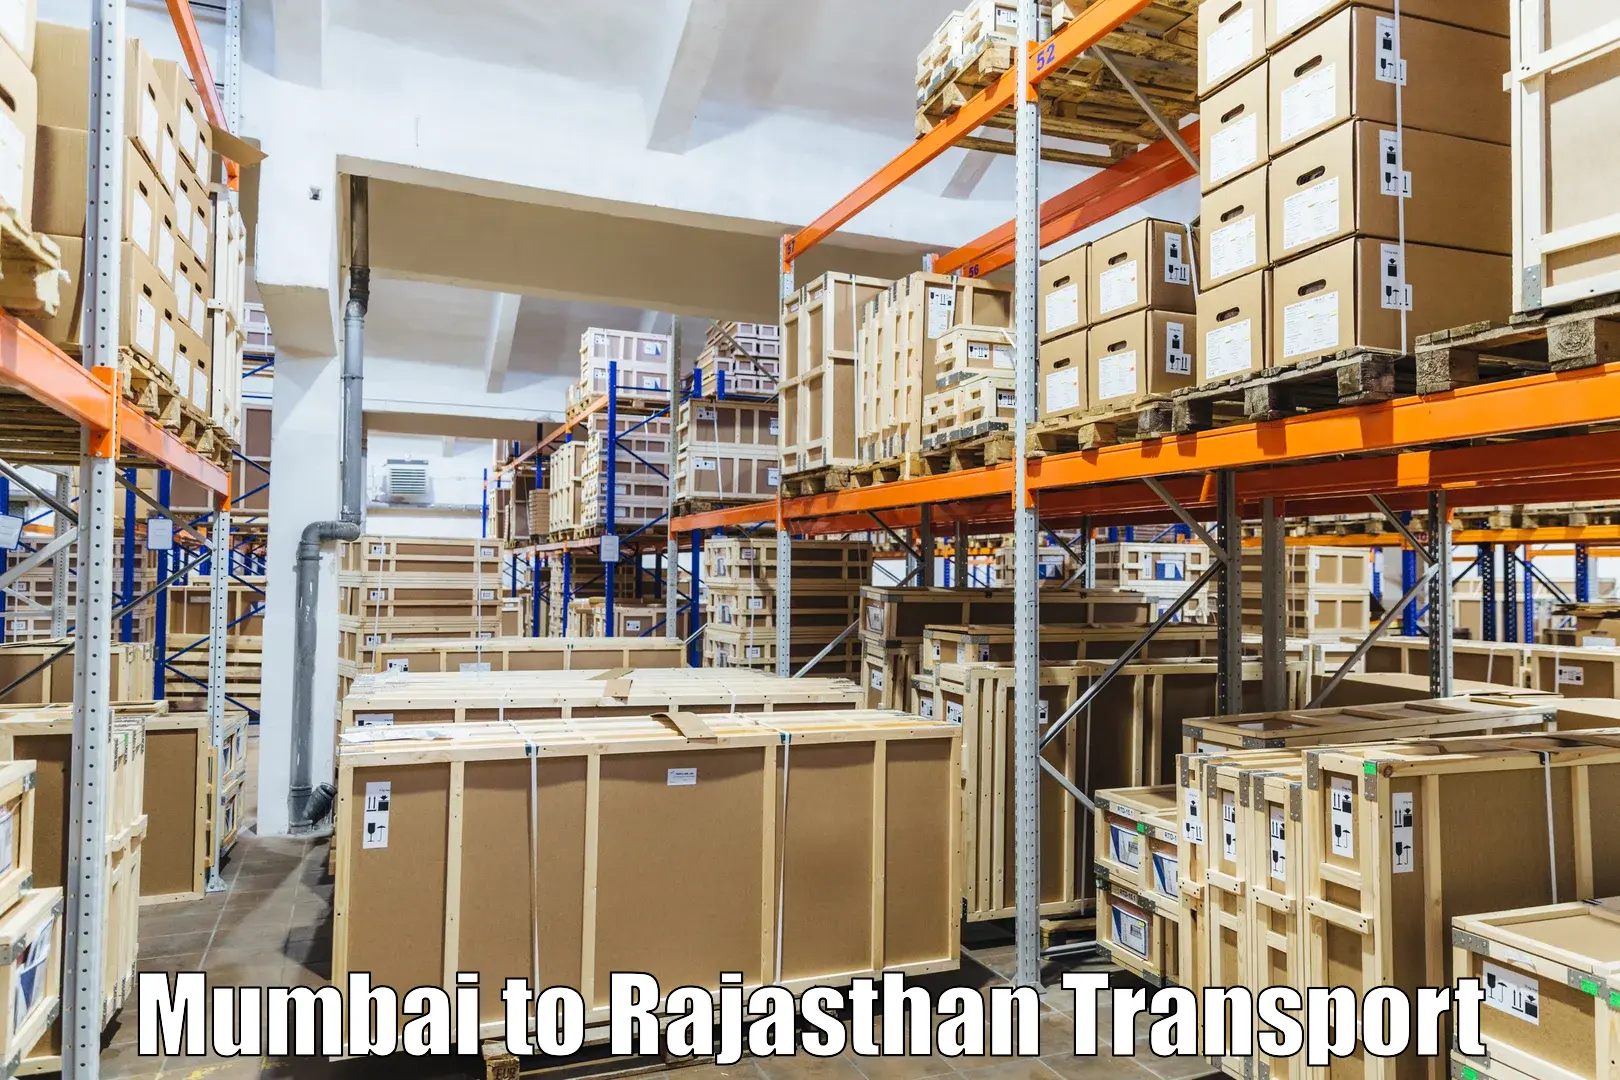 Luggage transport services Mumbai to Banswara